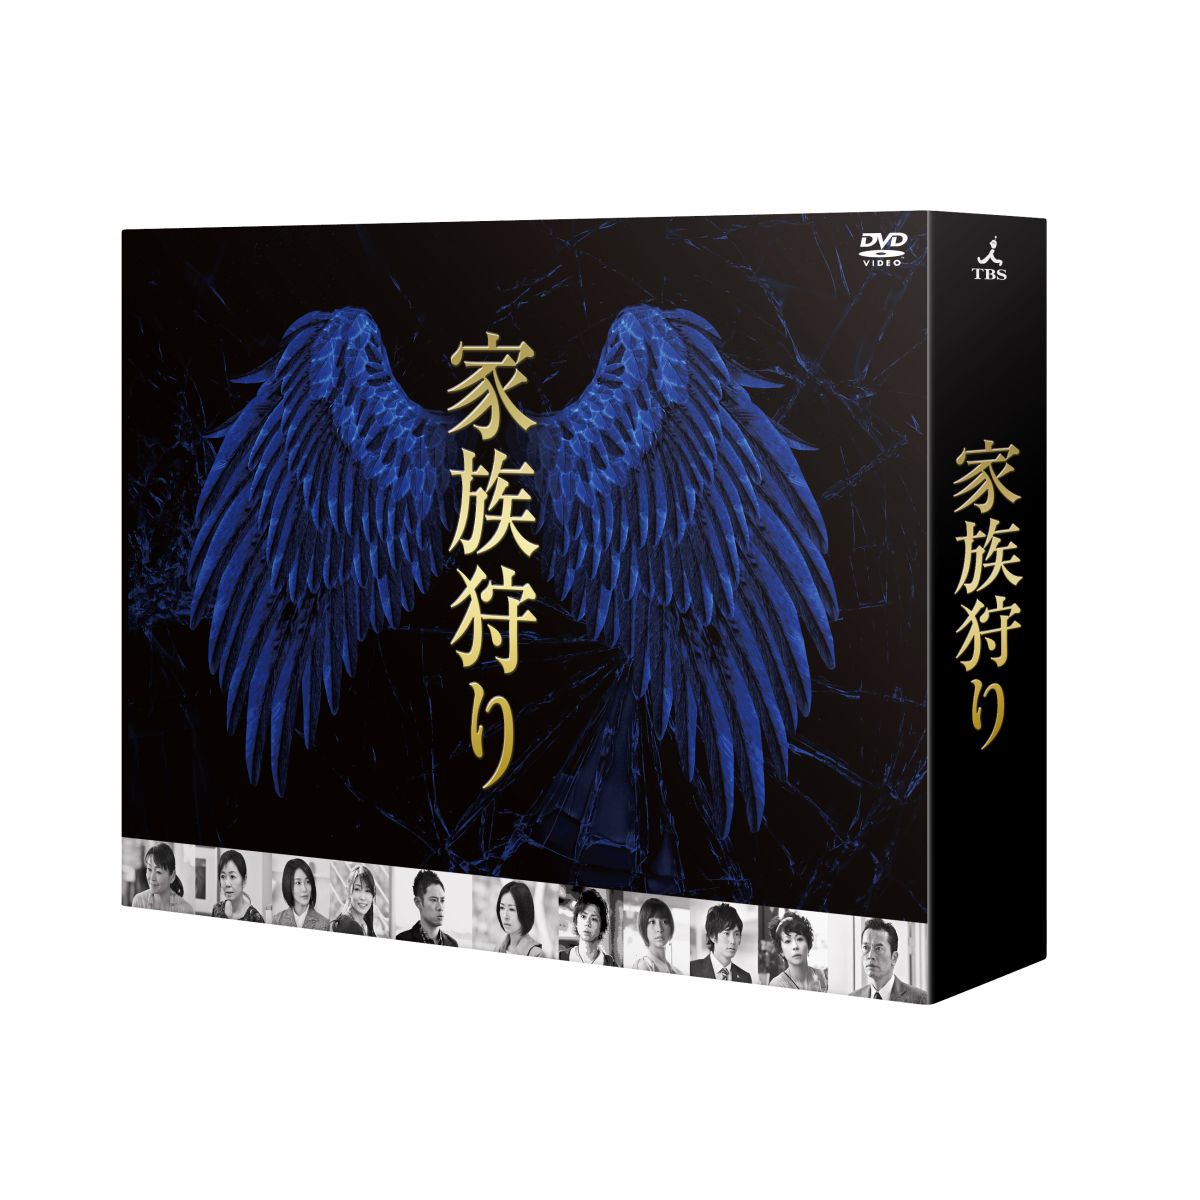 楽天ブックス: 家族狩り ディレクターズカット完全版 DVD-BOX - 松雪